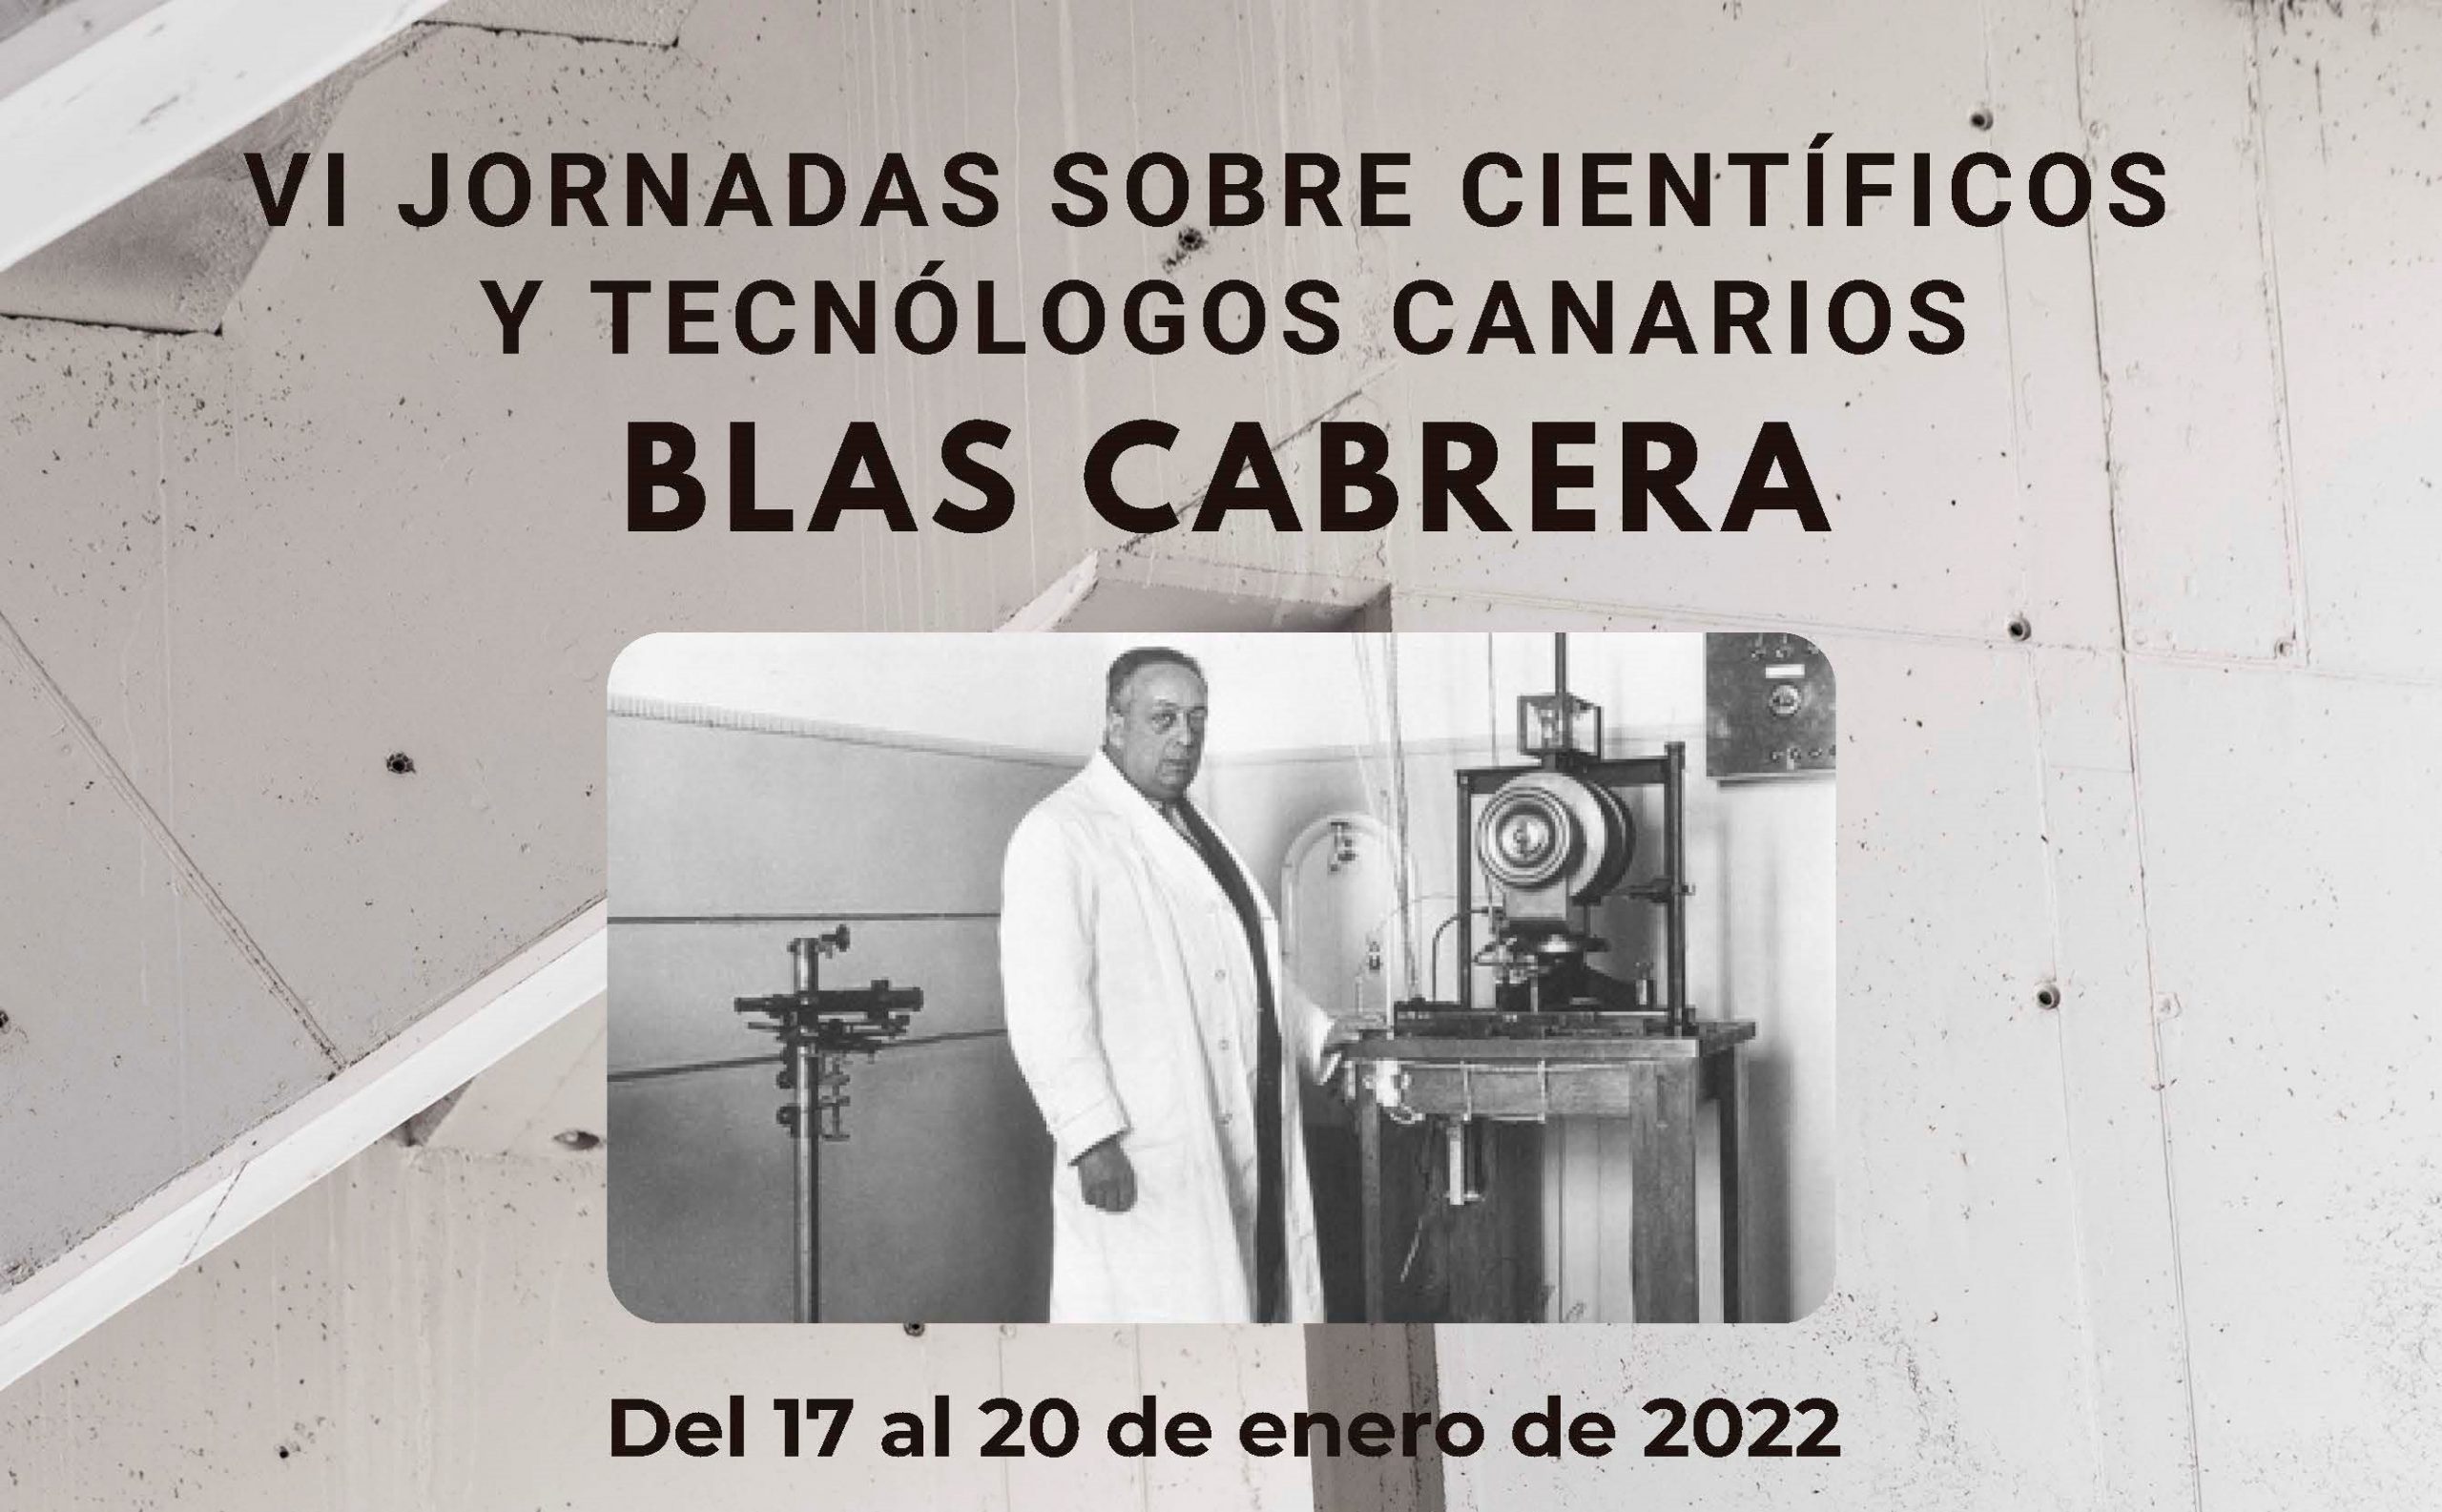 Cuarta conferencia de las VI Jornadas sobre Científicos y Tecnólogos Canarios, dedicadas a Blas Cabrera: «Blas Cabrera. Ciencia en España y Rayos X», por José Hernández Armas, catedrático jubilado de Física Médica de la ULL (20/01/2022)